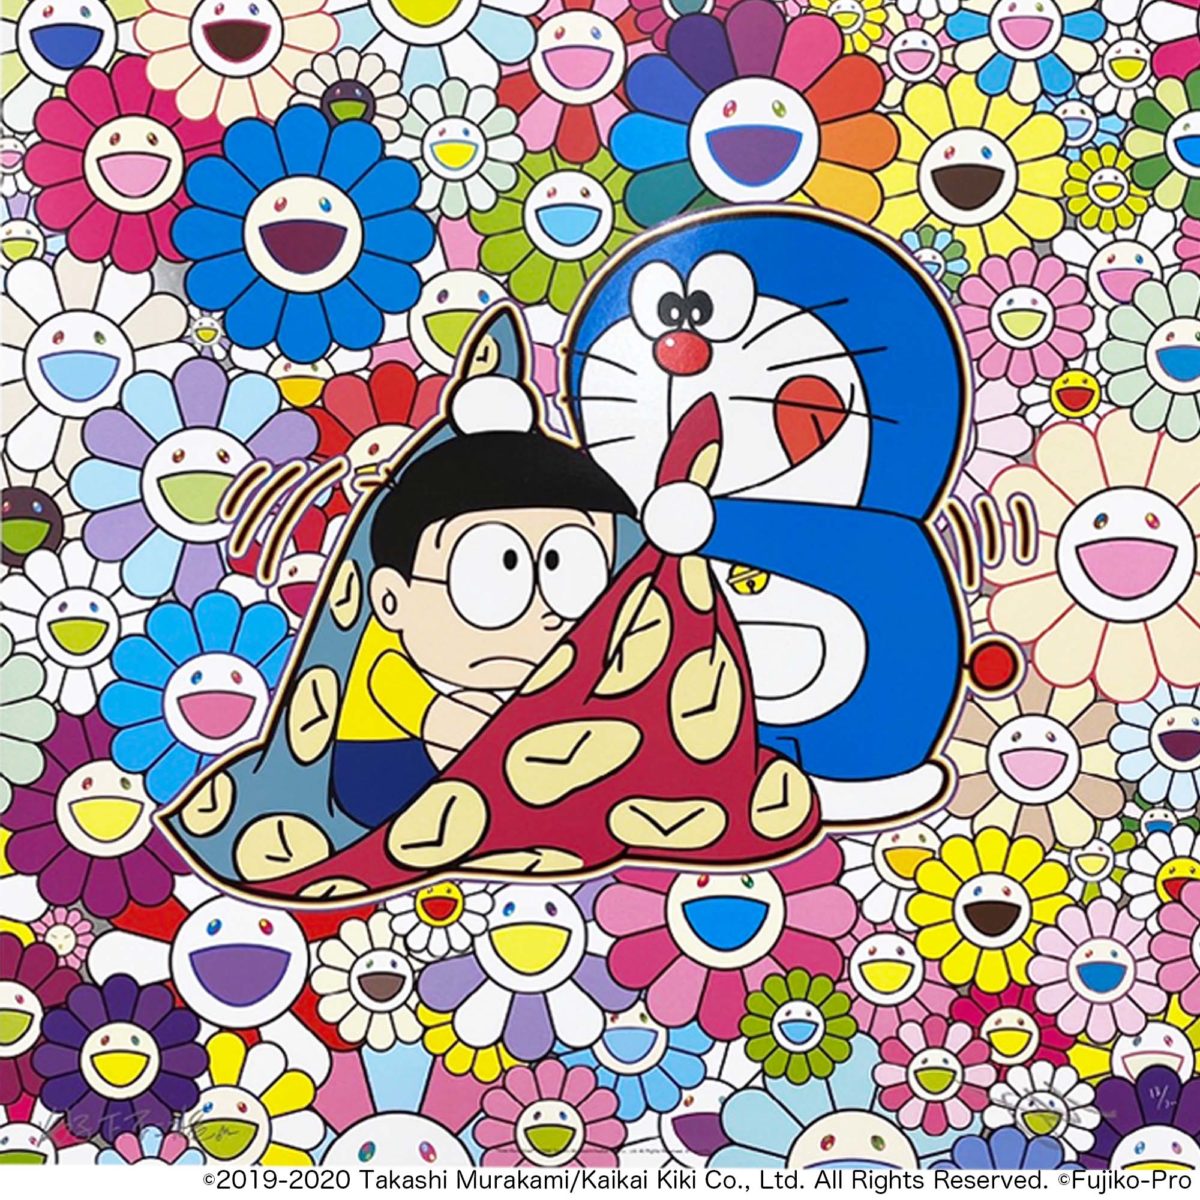 Takashi Murakami - Time Furoshiki